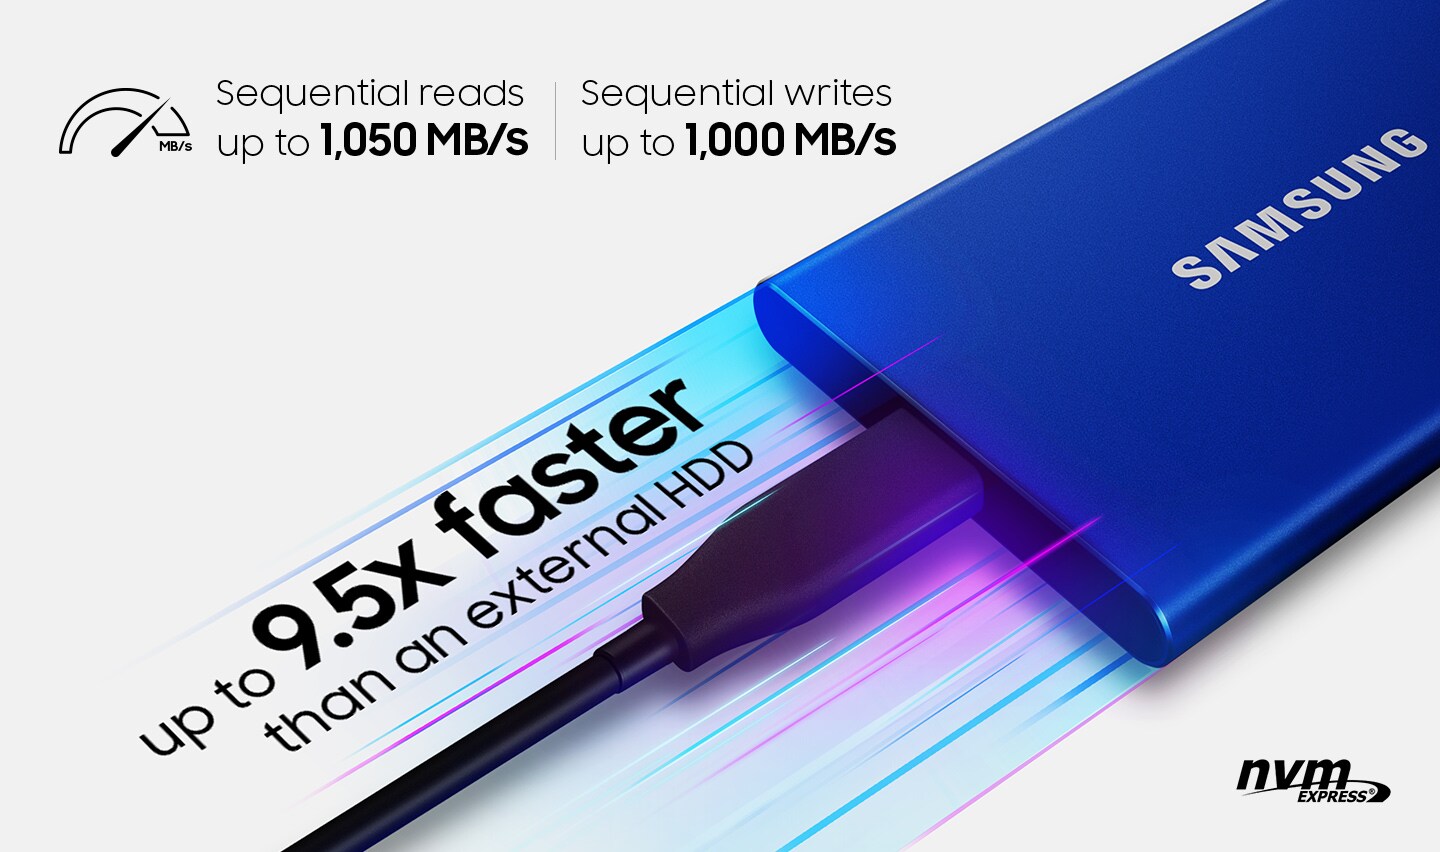 Disque SSD externe USB 3.2 T7 2 To de Samsung 